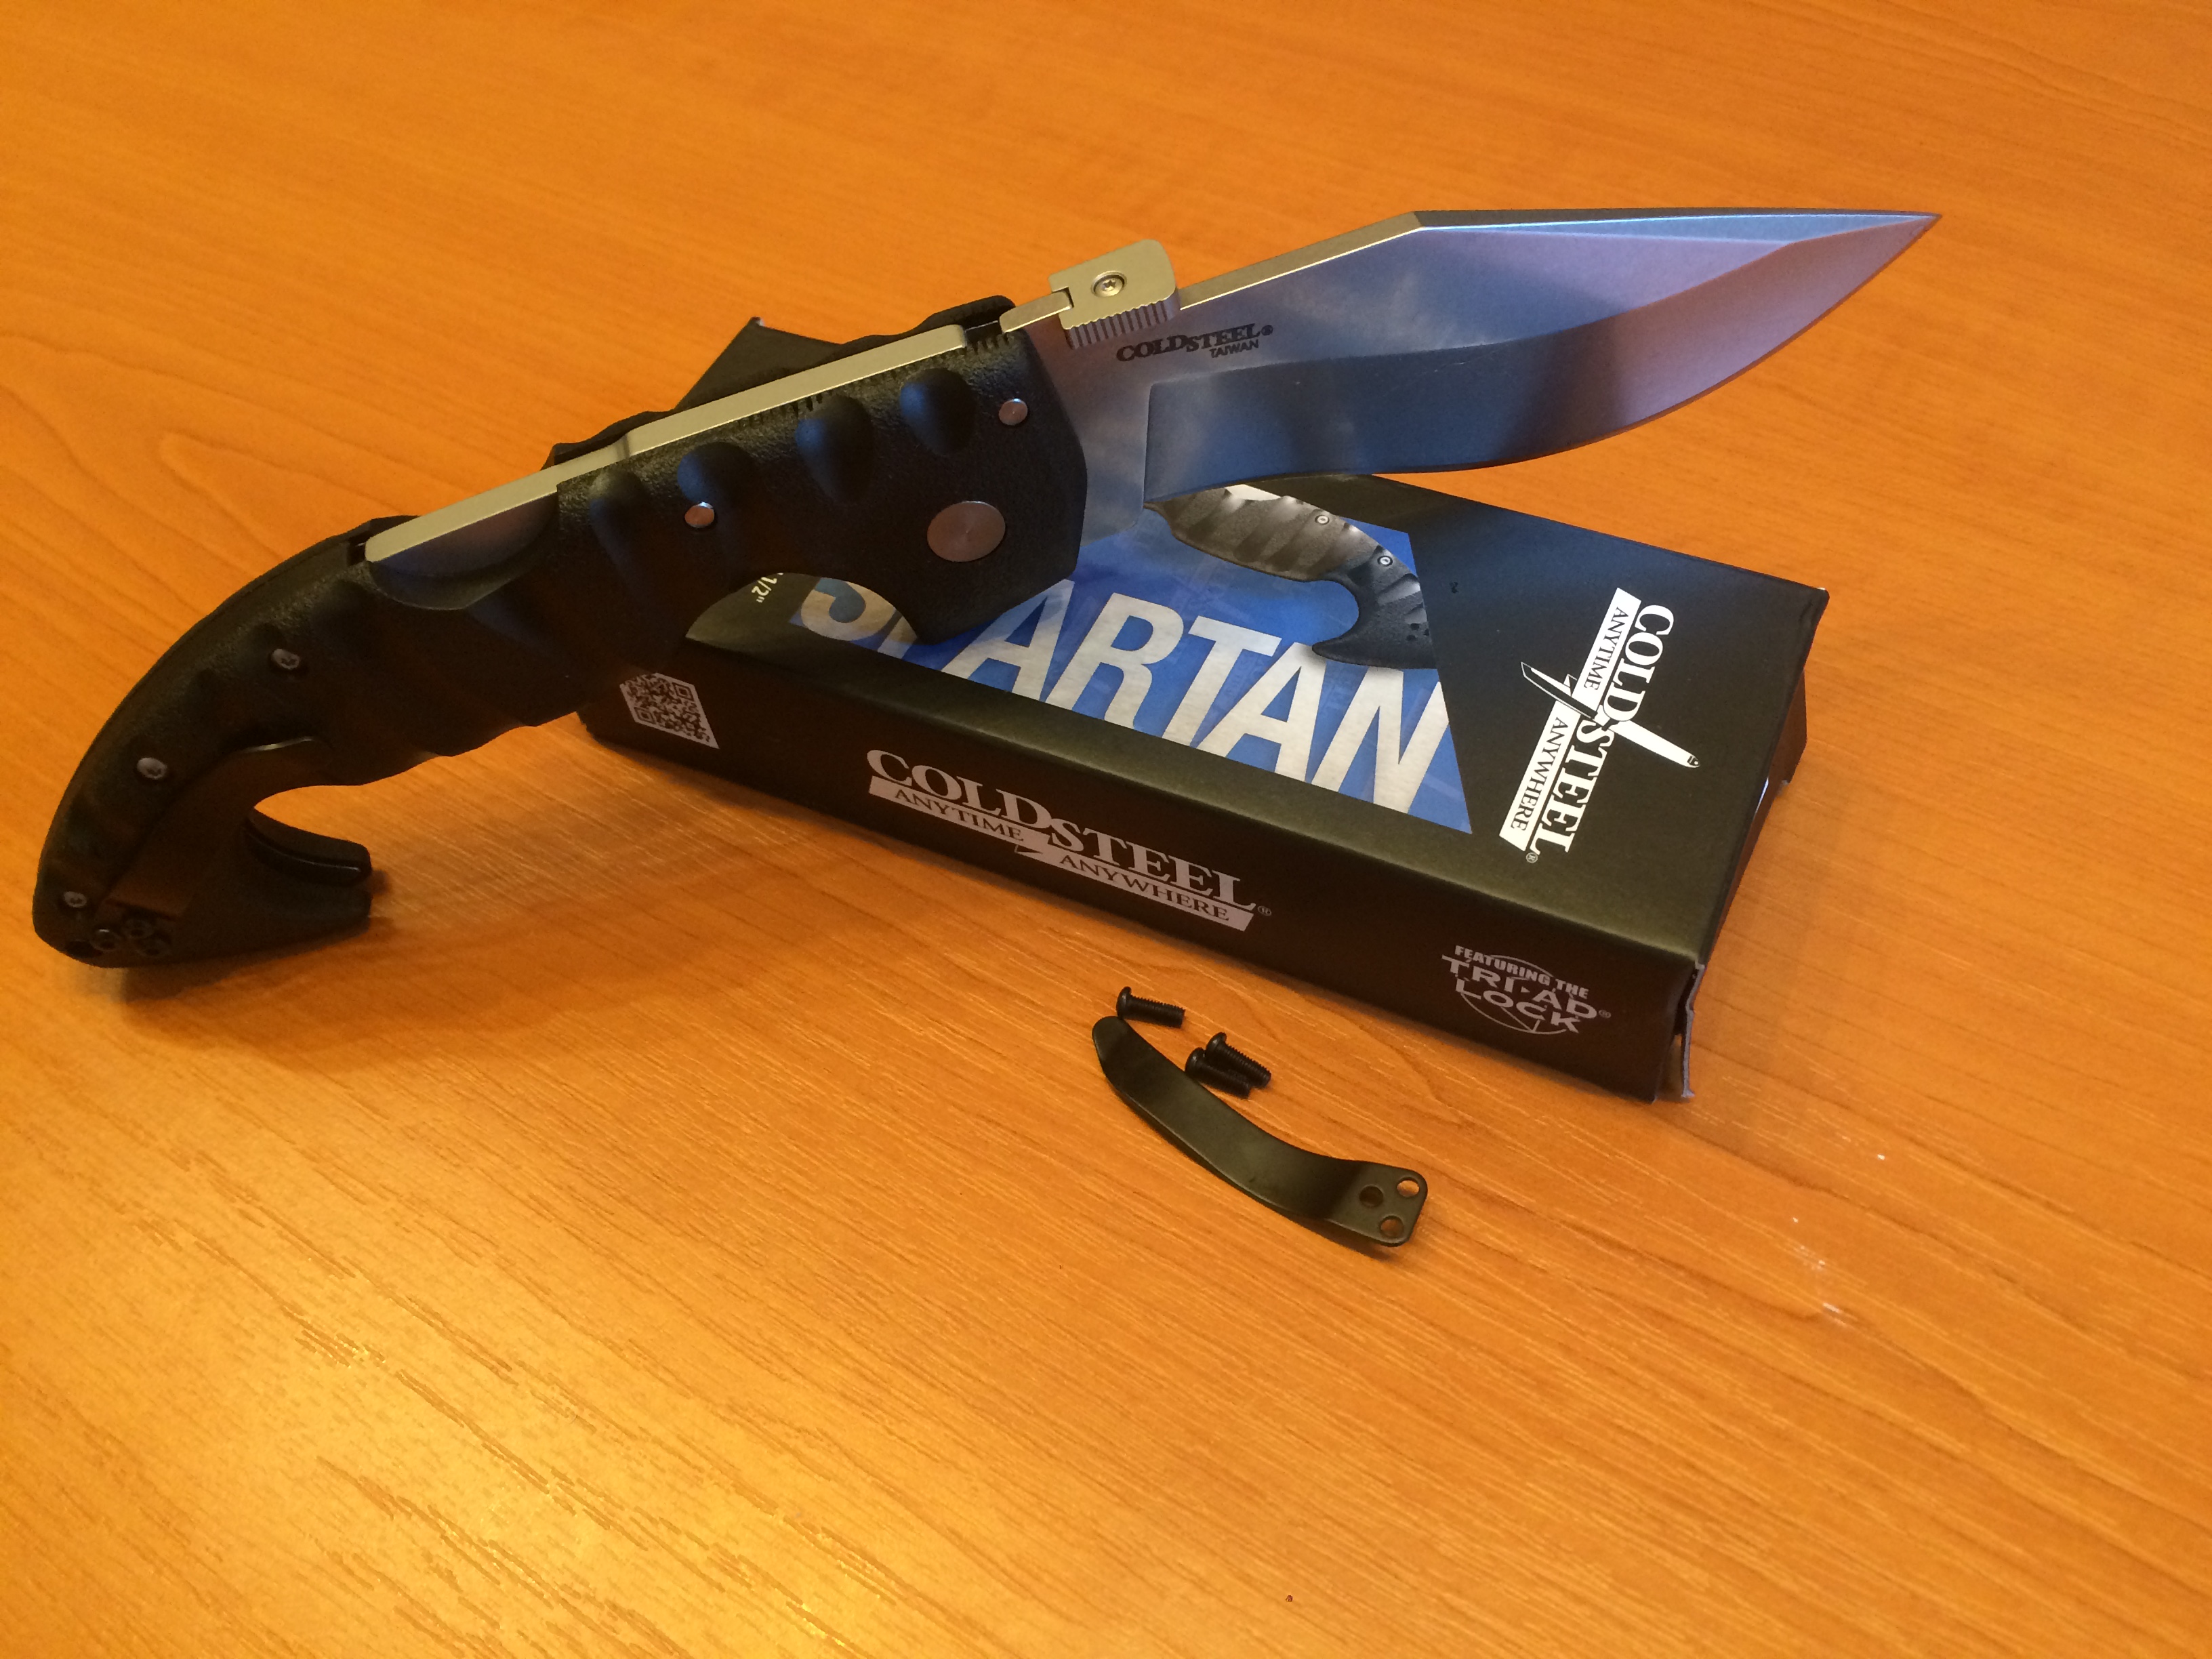 Součástí balení je spolu  s nožem Spartan od výrobce Cold Steel také klips pro změnu strany nošení